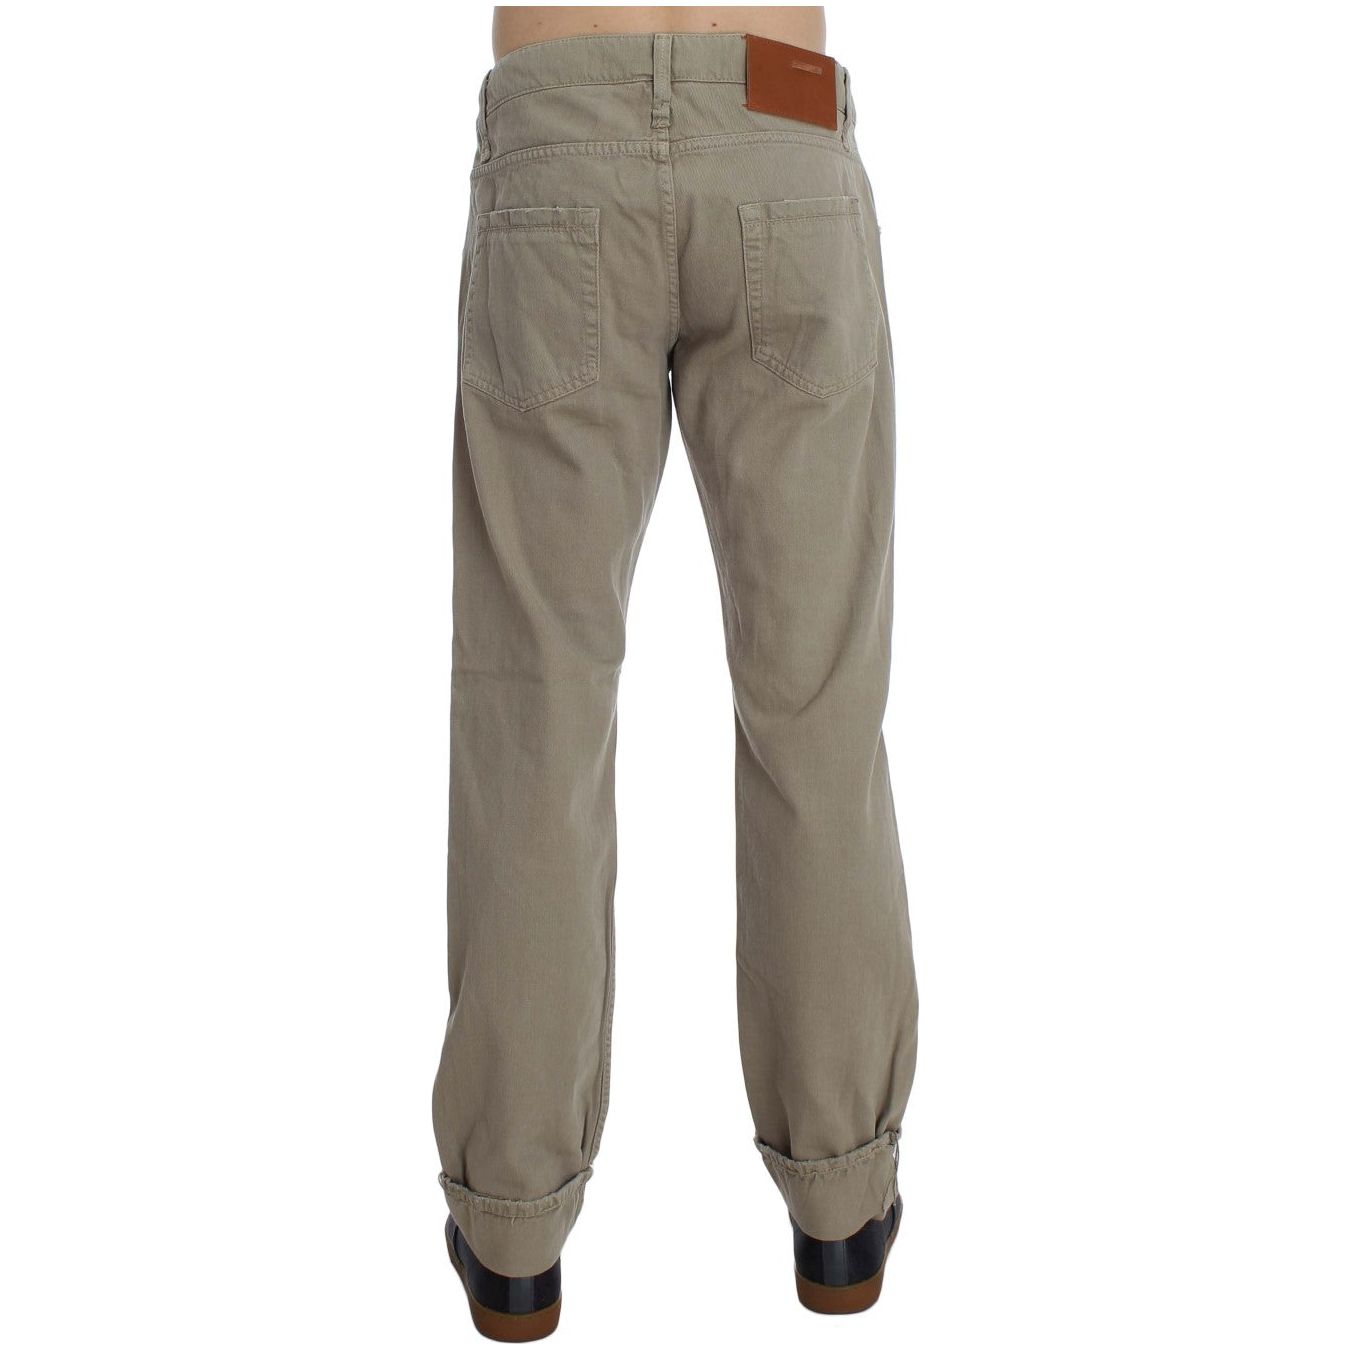 Acht Beige Straight Fit Cotton Jeans for Men Jeans & Pants beige-cotton-patchwork-jeans